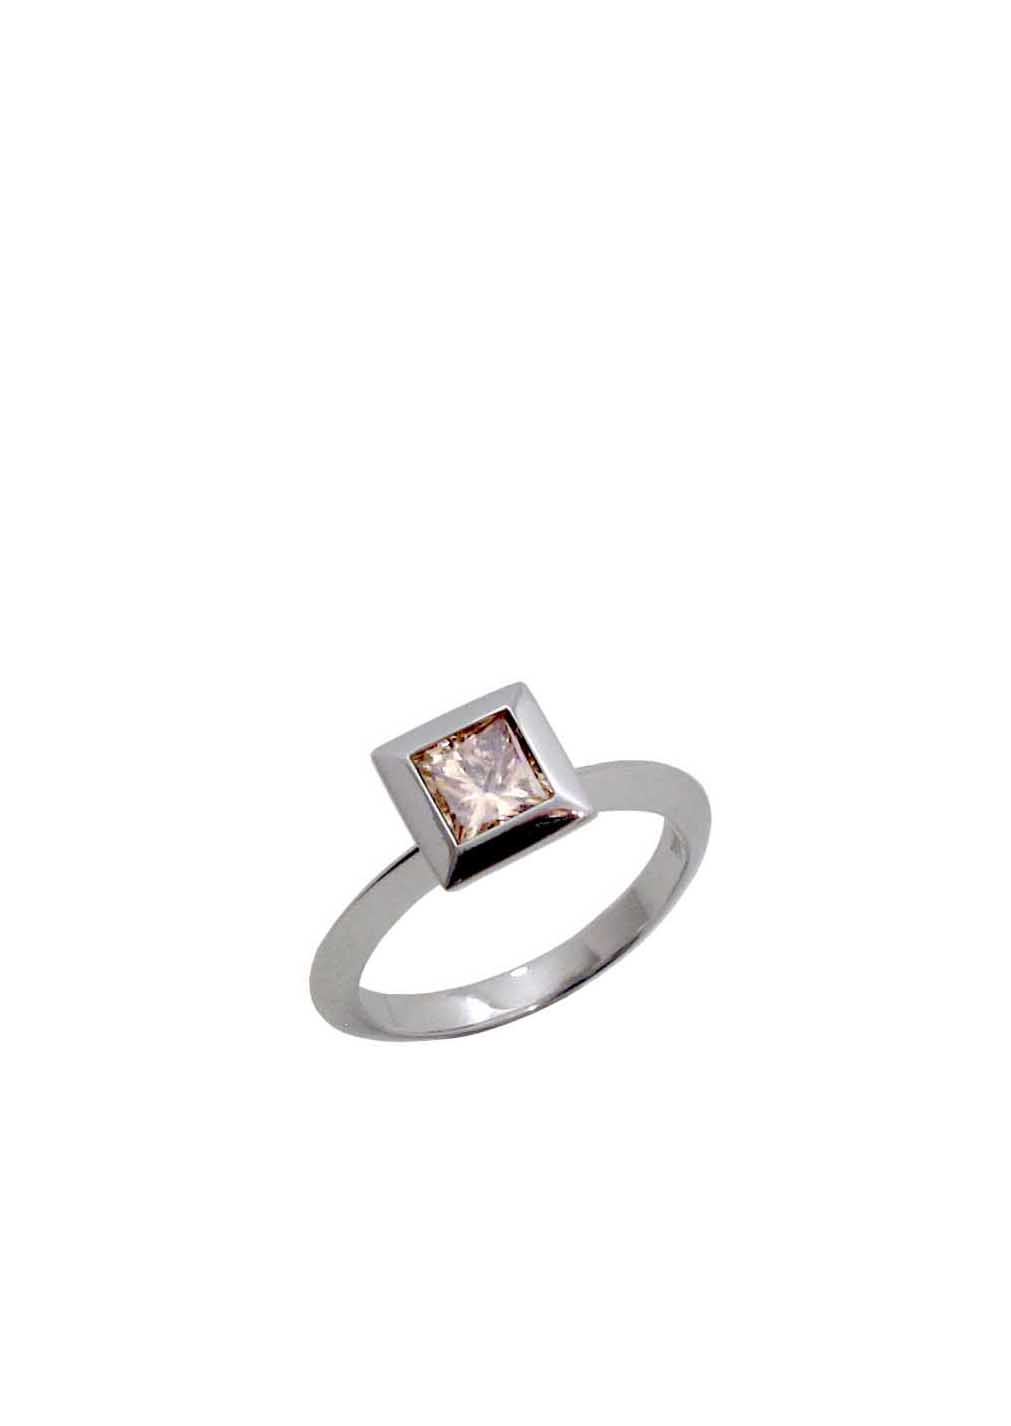 Diamantring mit champagner farbigem Diamant im Prinzessschliff, 1,04 carat, 4.250 Euro